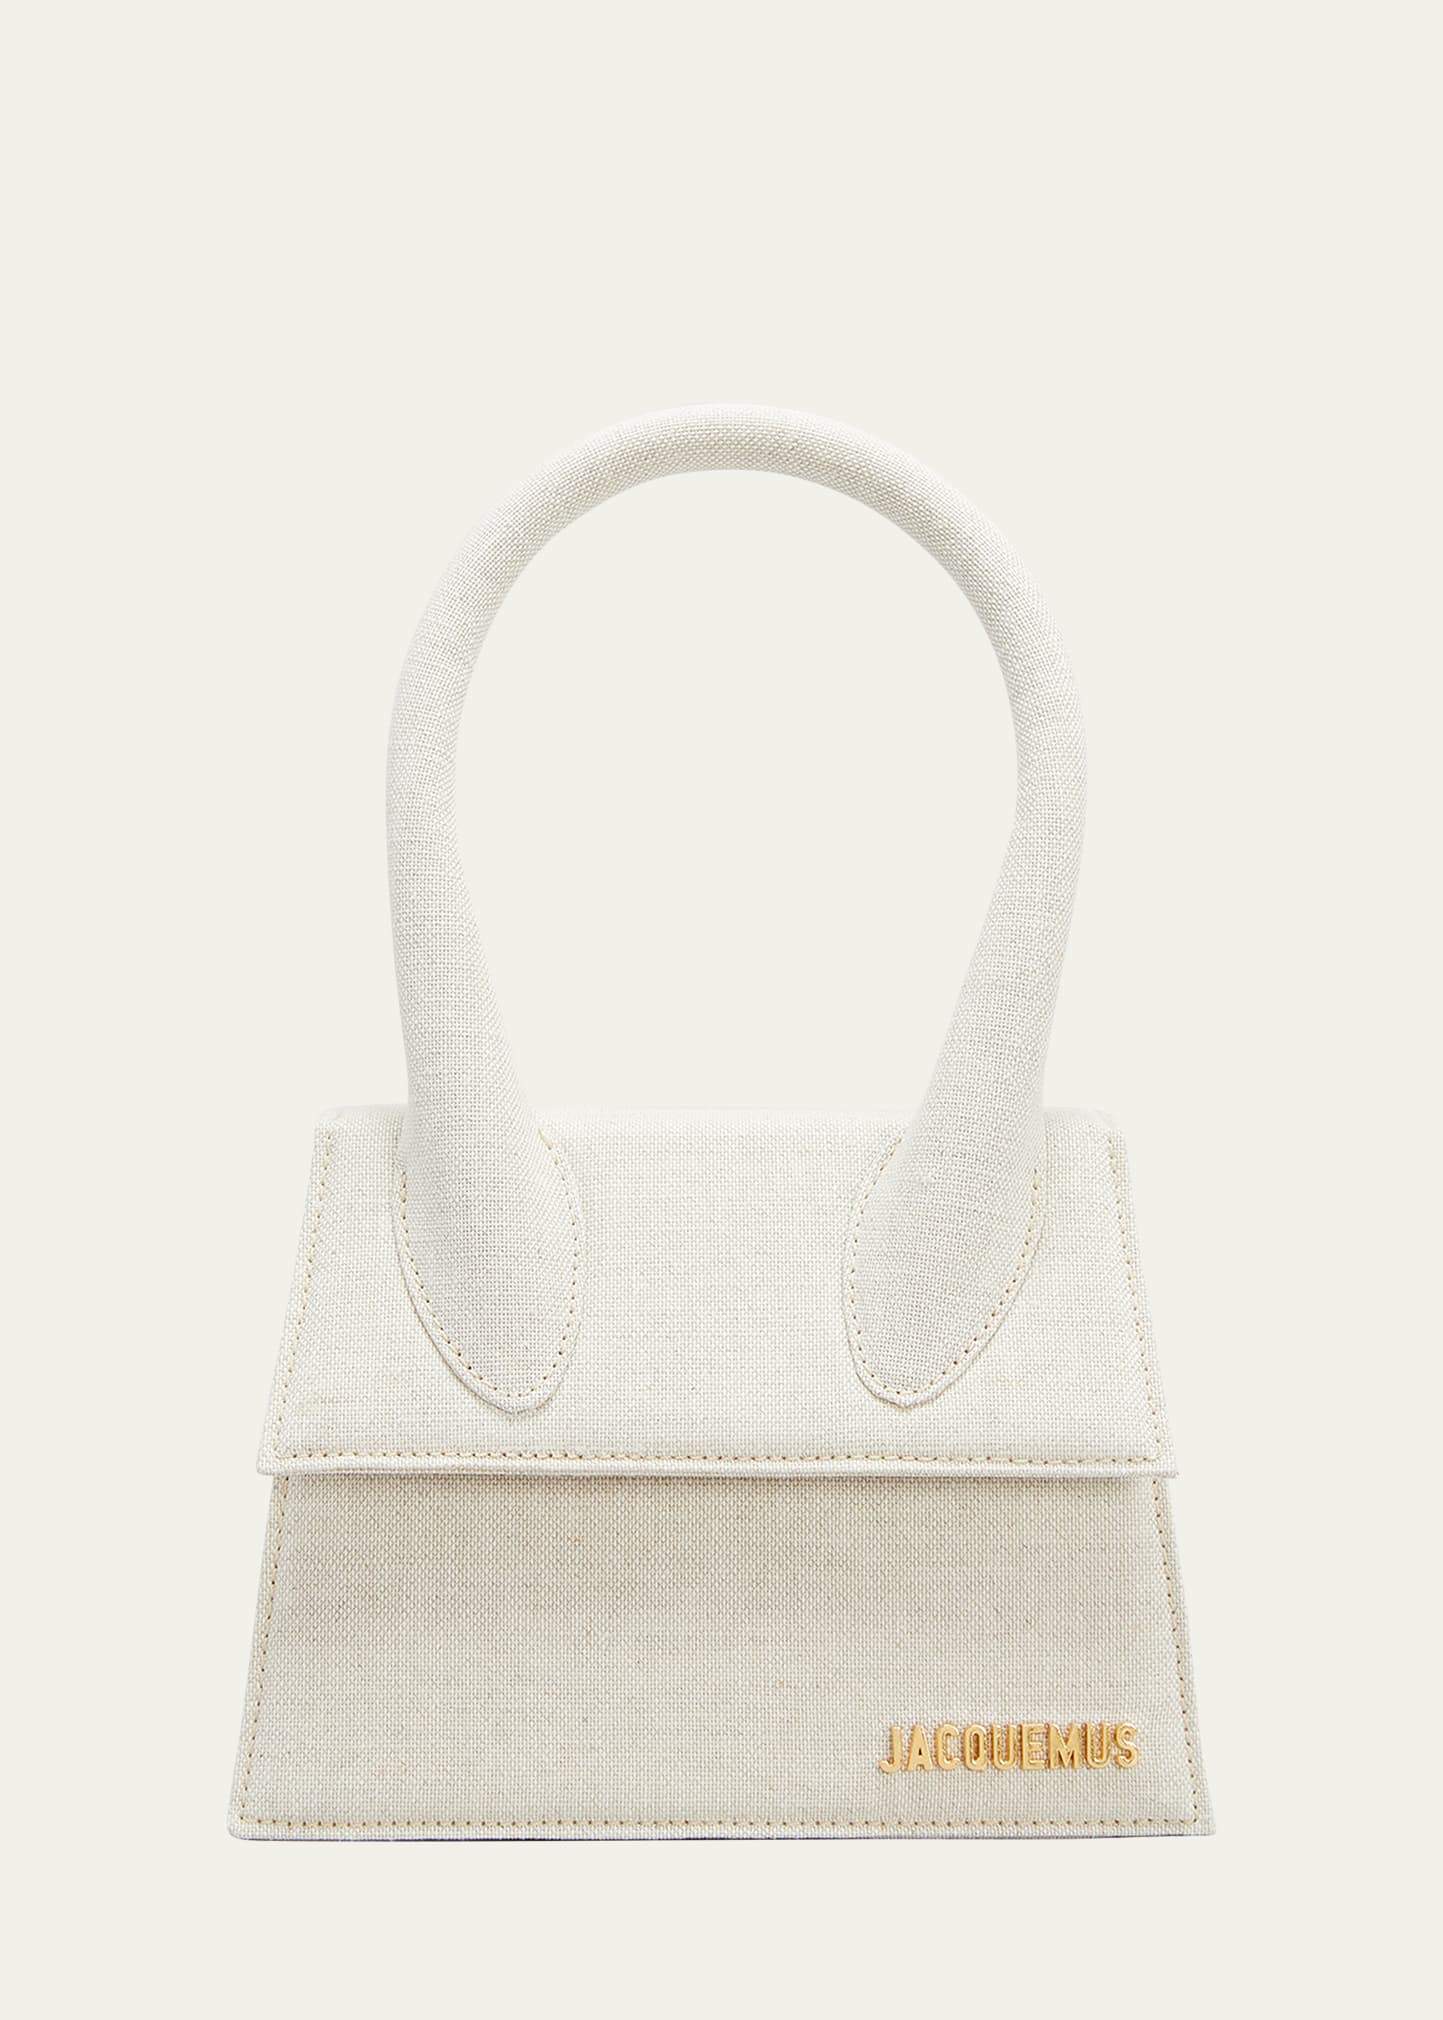 Jacquemus Le Chiquito Moyen Linen Top-Handle Bag